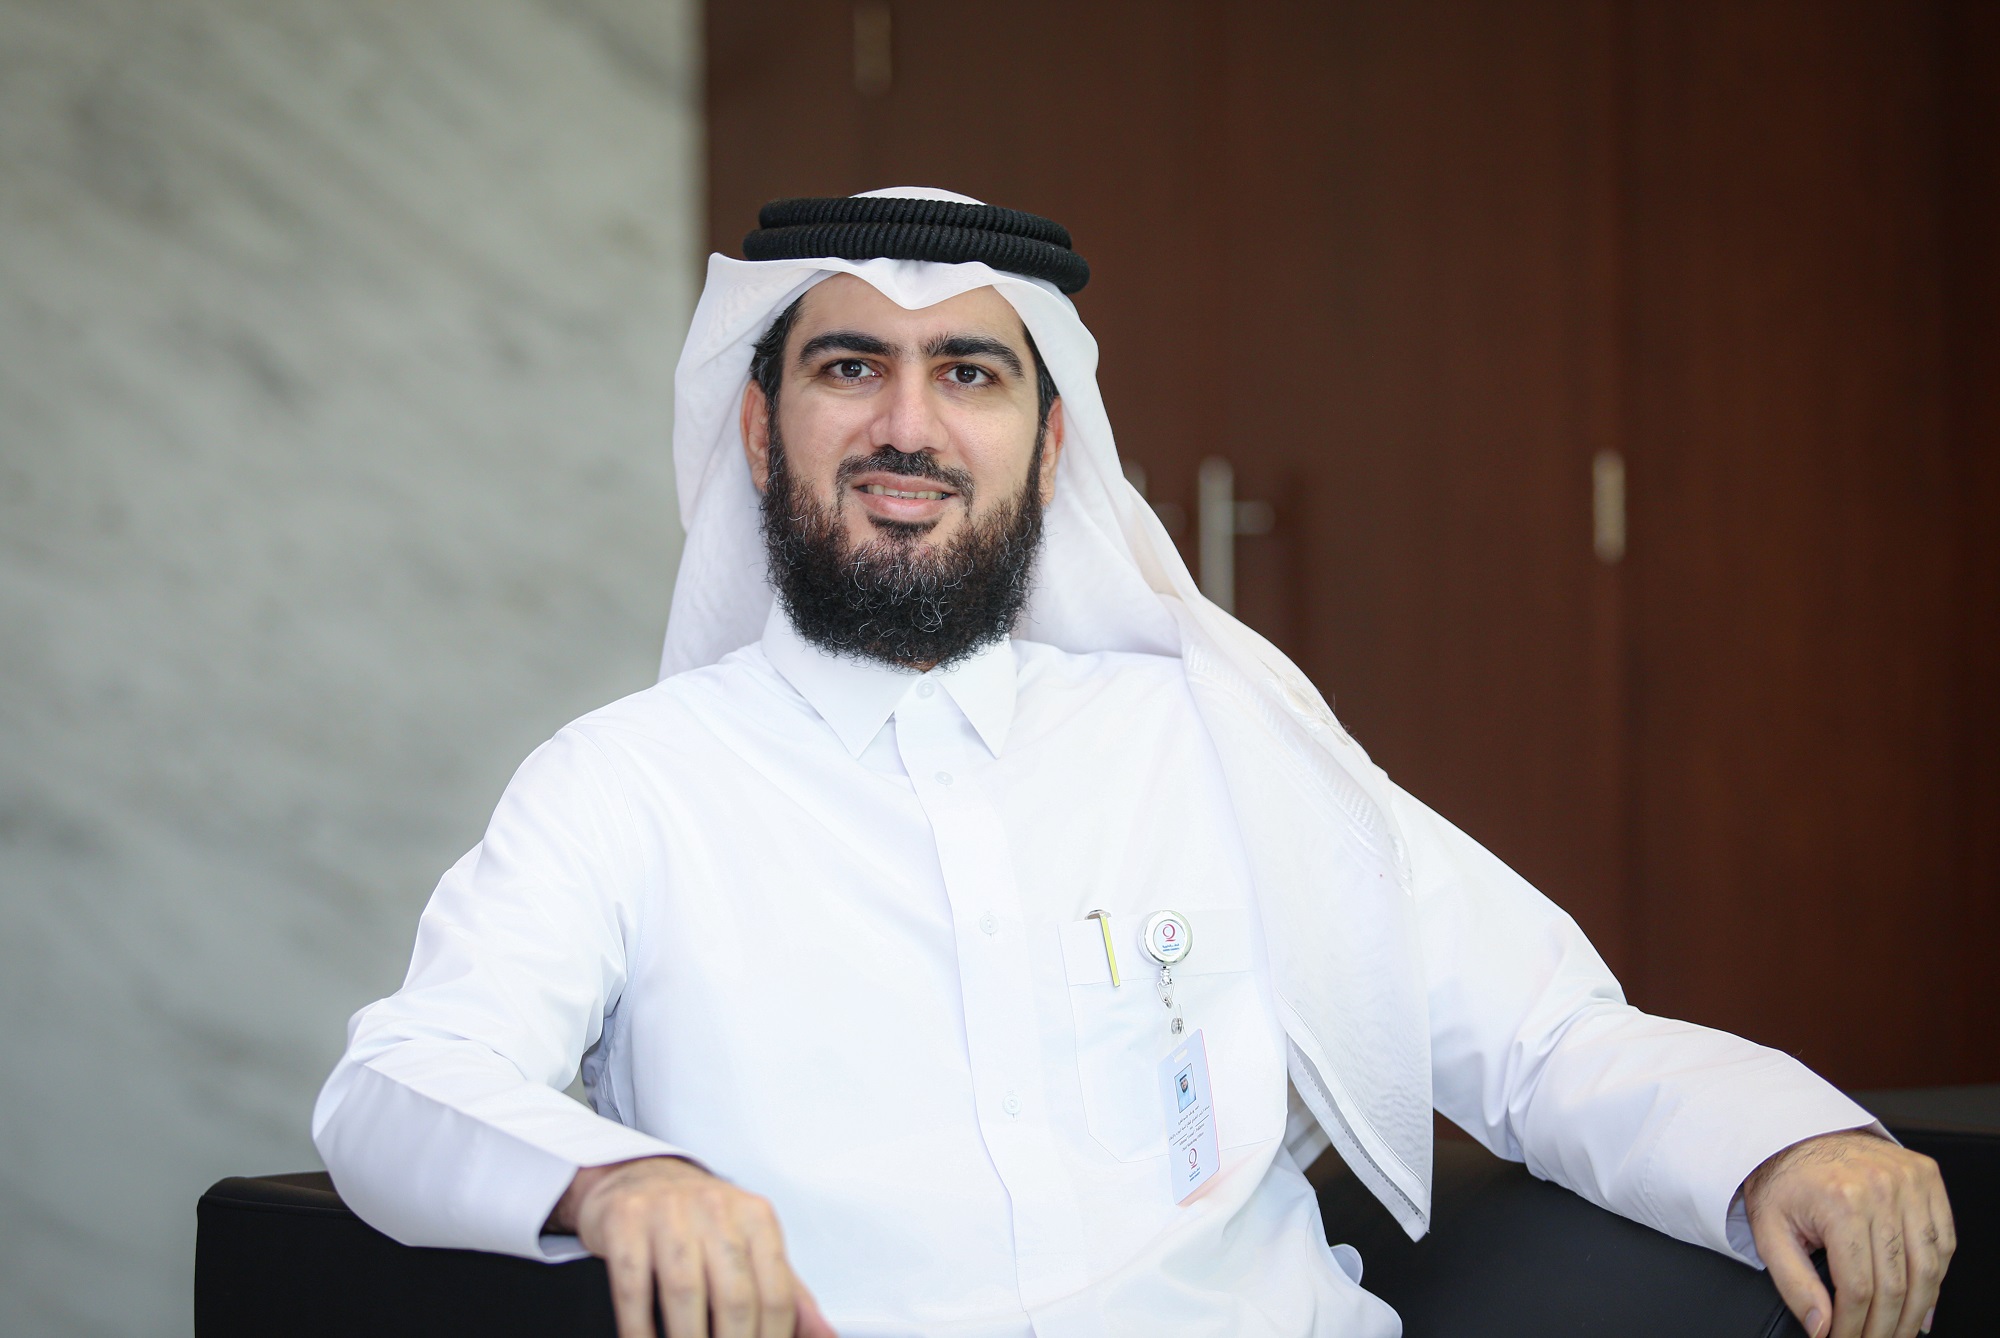 السيد أحمد فخرو: طرق سهلة وسريعة لحساب ودفع الزكاة عبر قطر الخيرية